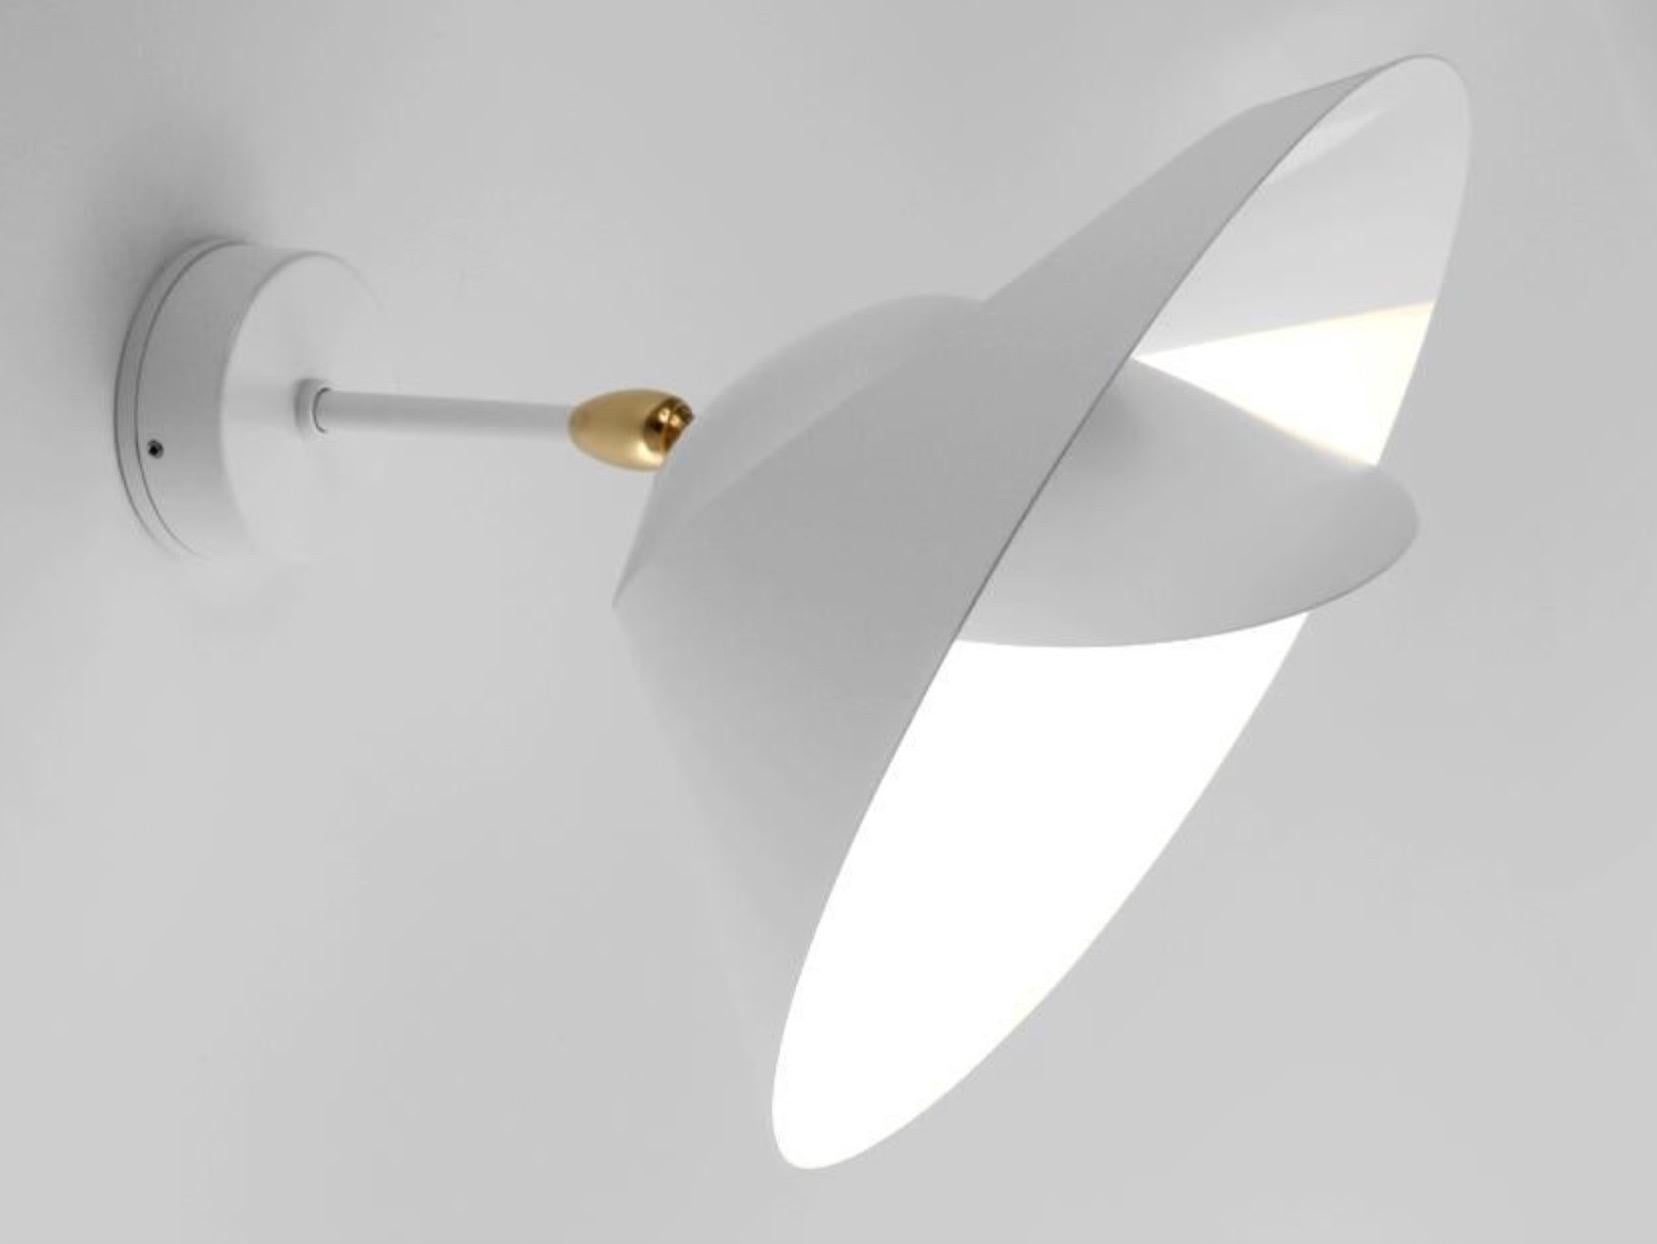 Wandleuchte 'Saturne' in weißer Ausführung. Gelistet als 220-240 Spannung, kann aber mit der richtigen Glühbirne in den USA, Kanada fest verdrahtet oder mit Stecker als Plug-in verwendet werden. 

Diese ikonische Leuchte wurde 1957 entworfen und